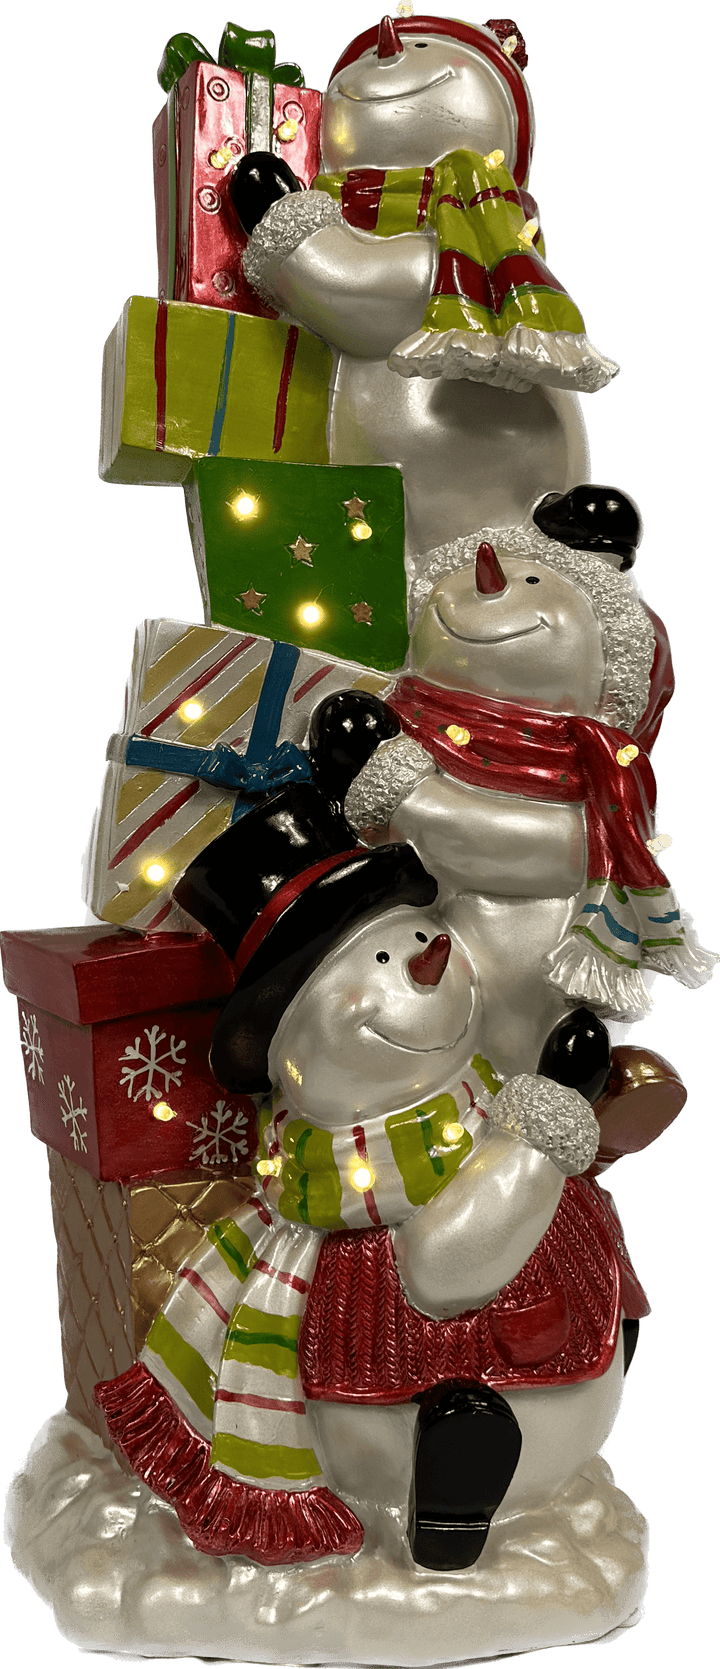 Kerstdecoratie De Smedt Verlichte Toren met Sneeuwman